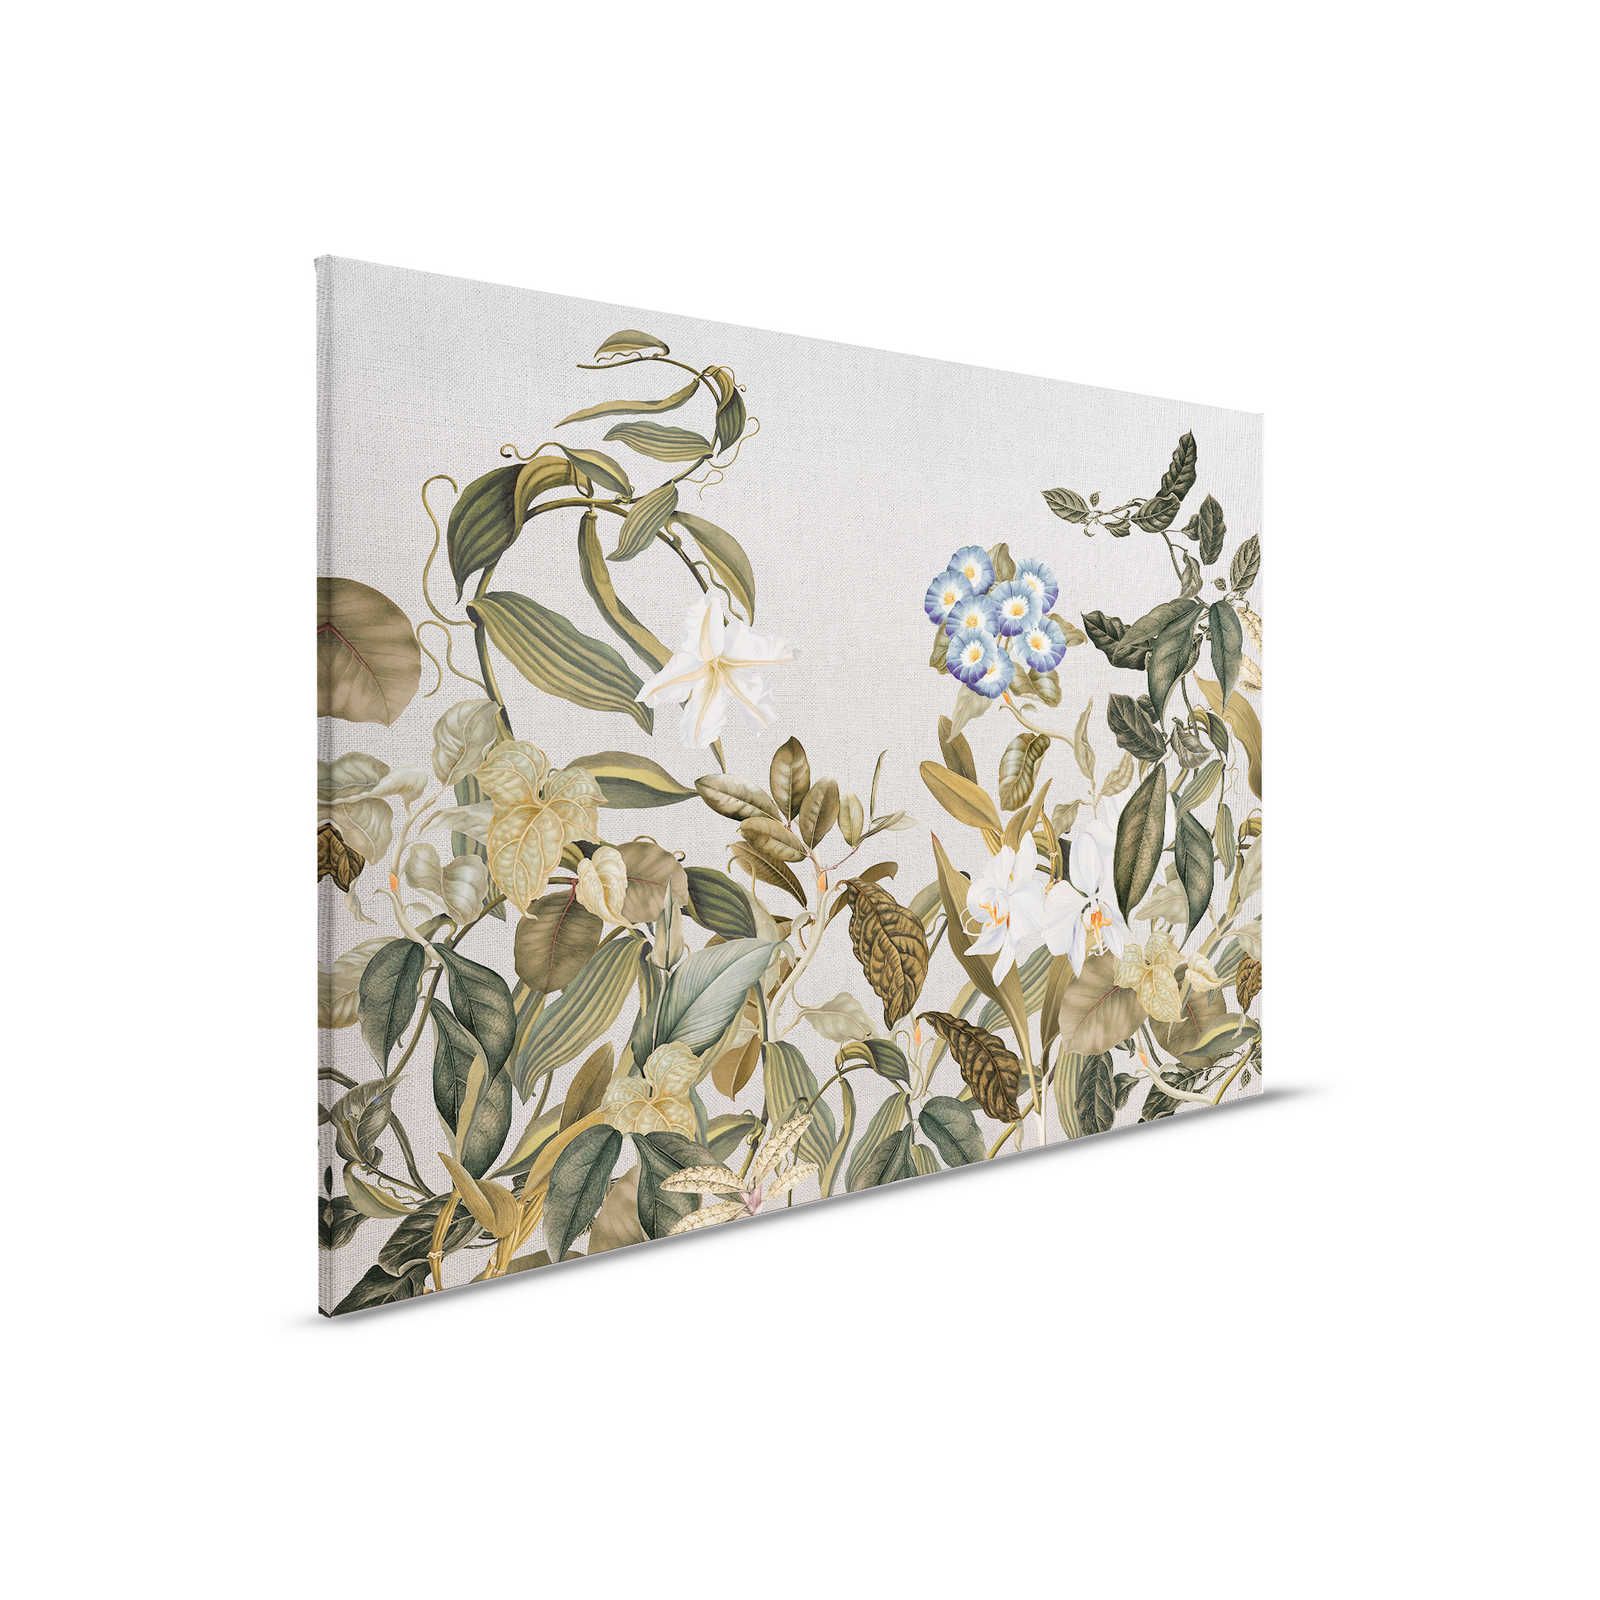 Lienzo estilo botánico Flores, hojas y aspecto textil - 0,90 m x 0,60 m
